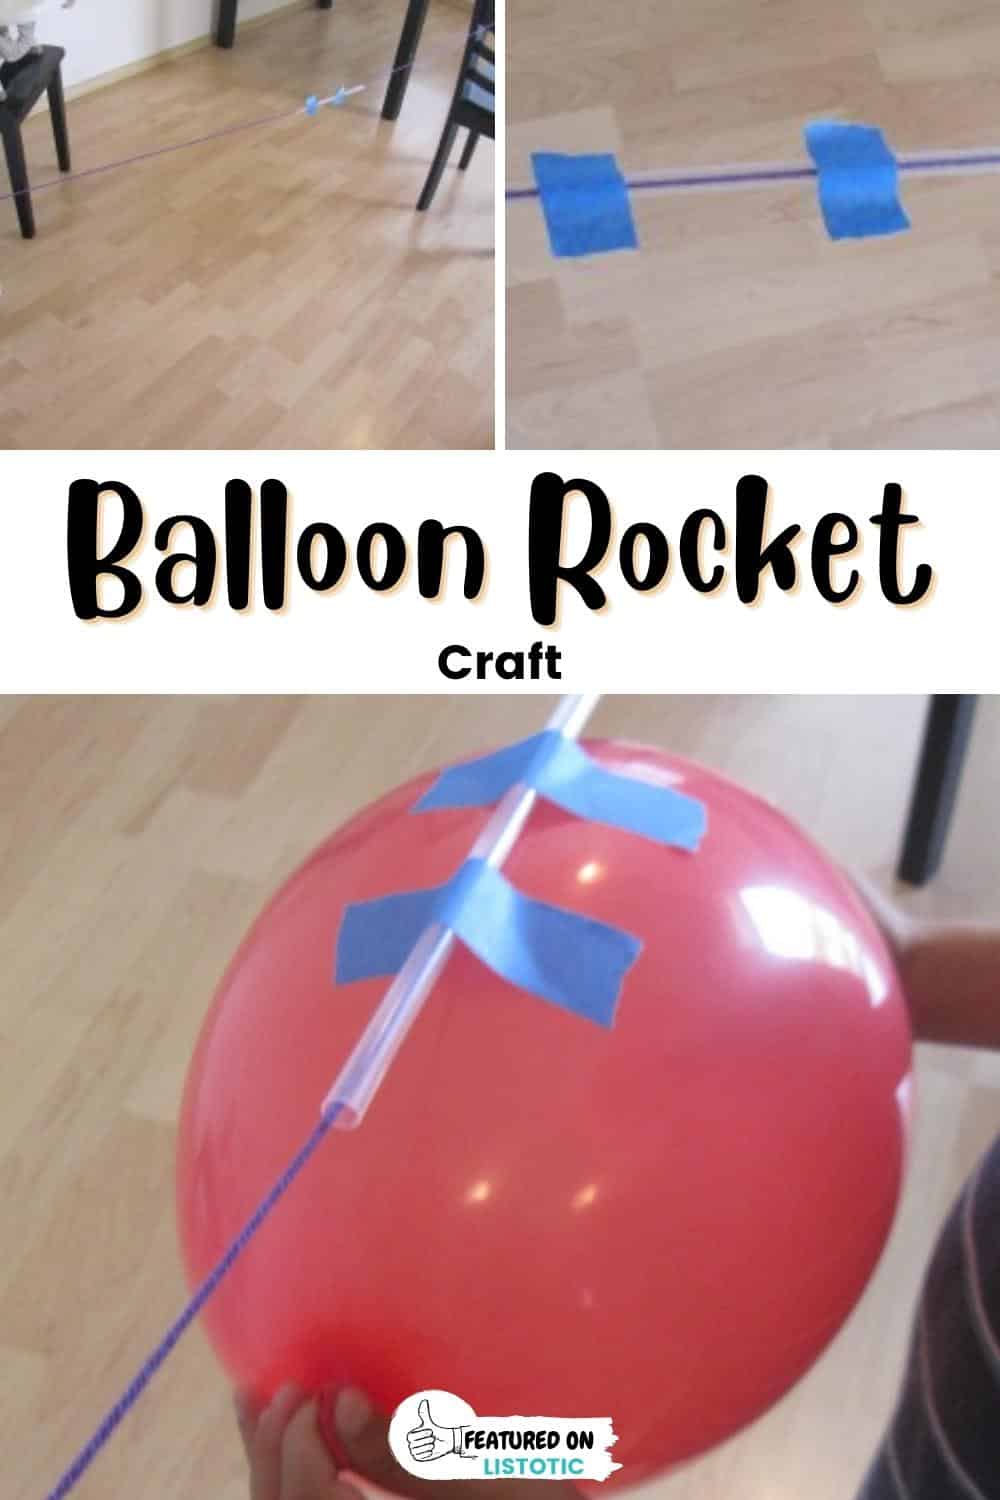 Balloon rocket.